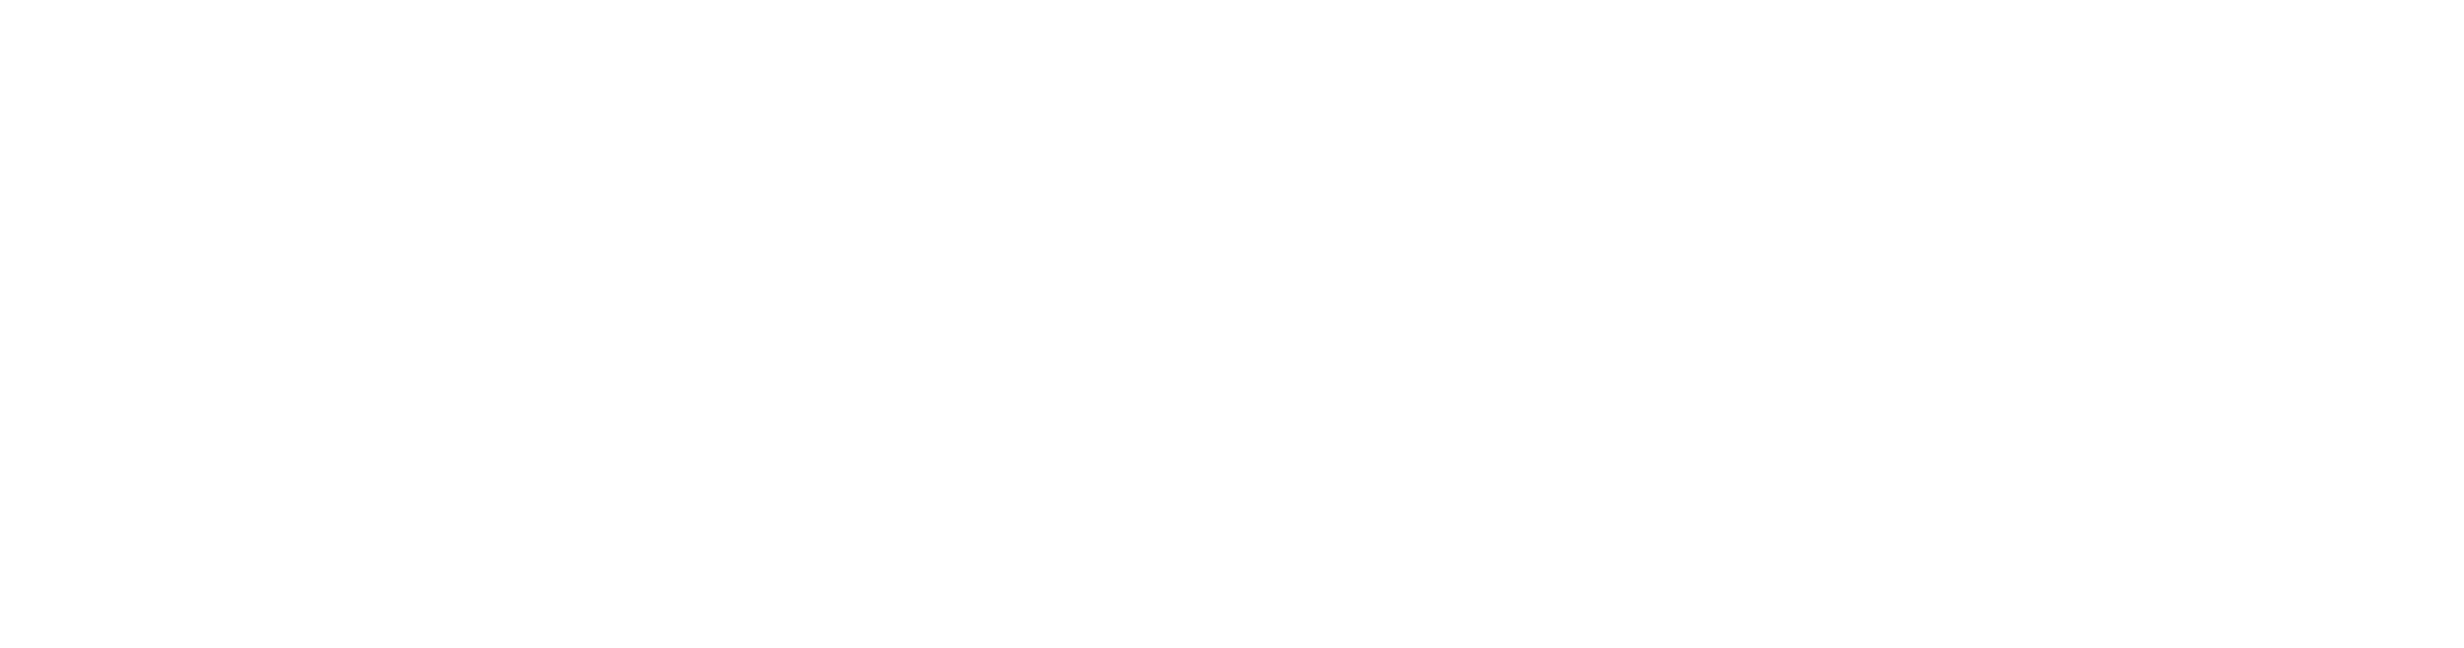 Hopper